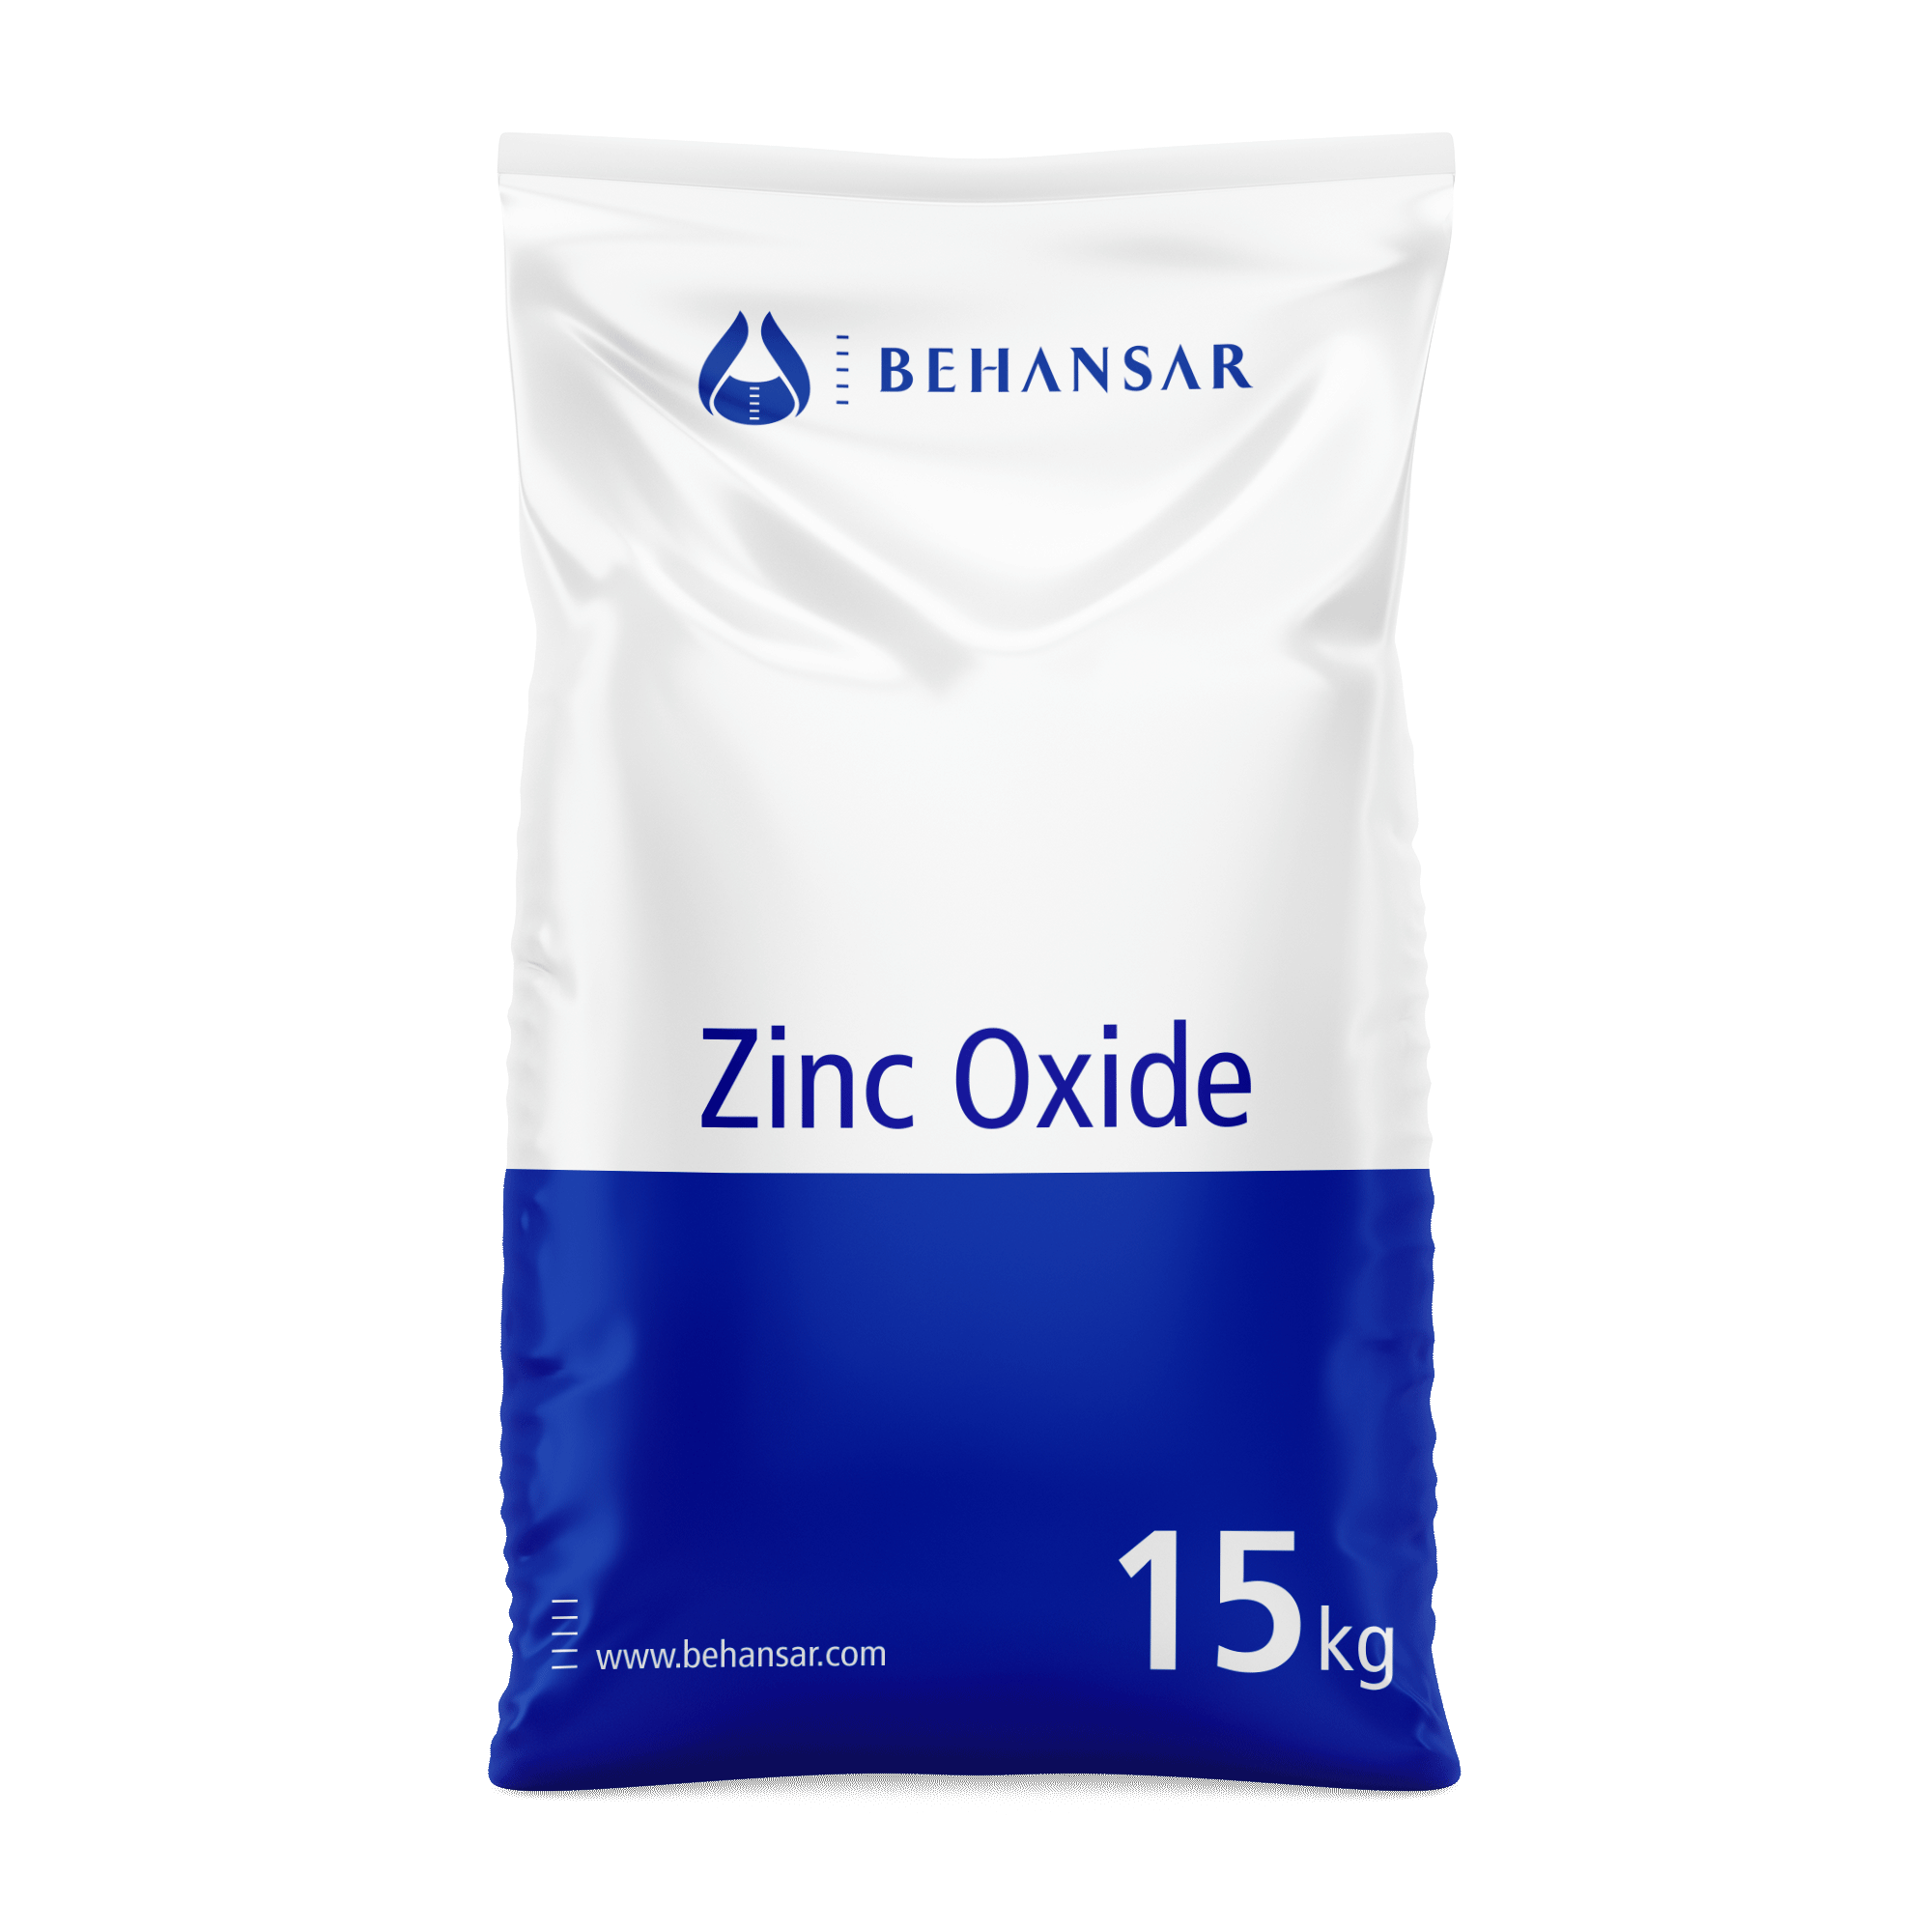 زینک اکساید یکی از تولیدات شرکت بهانسار است